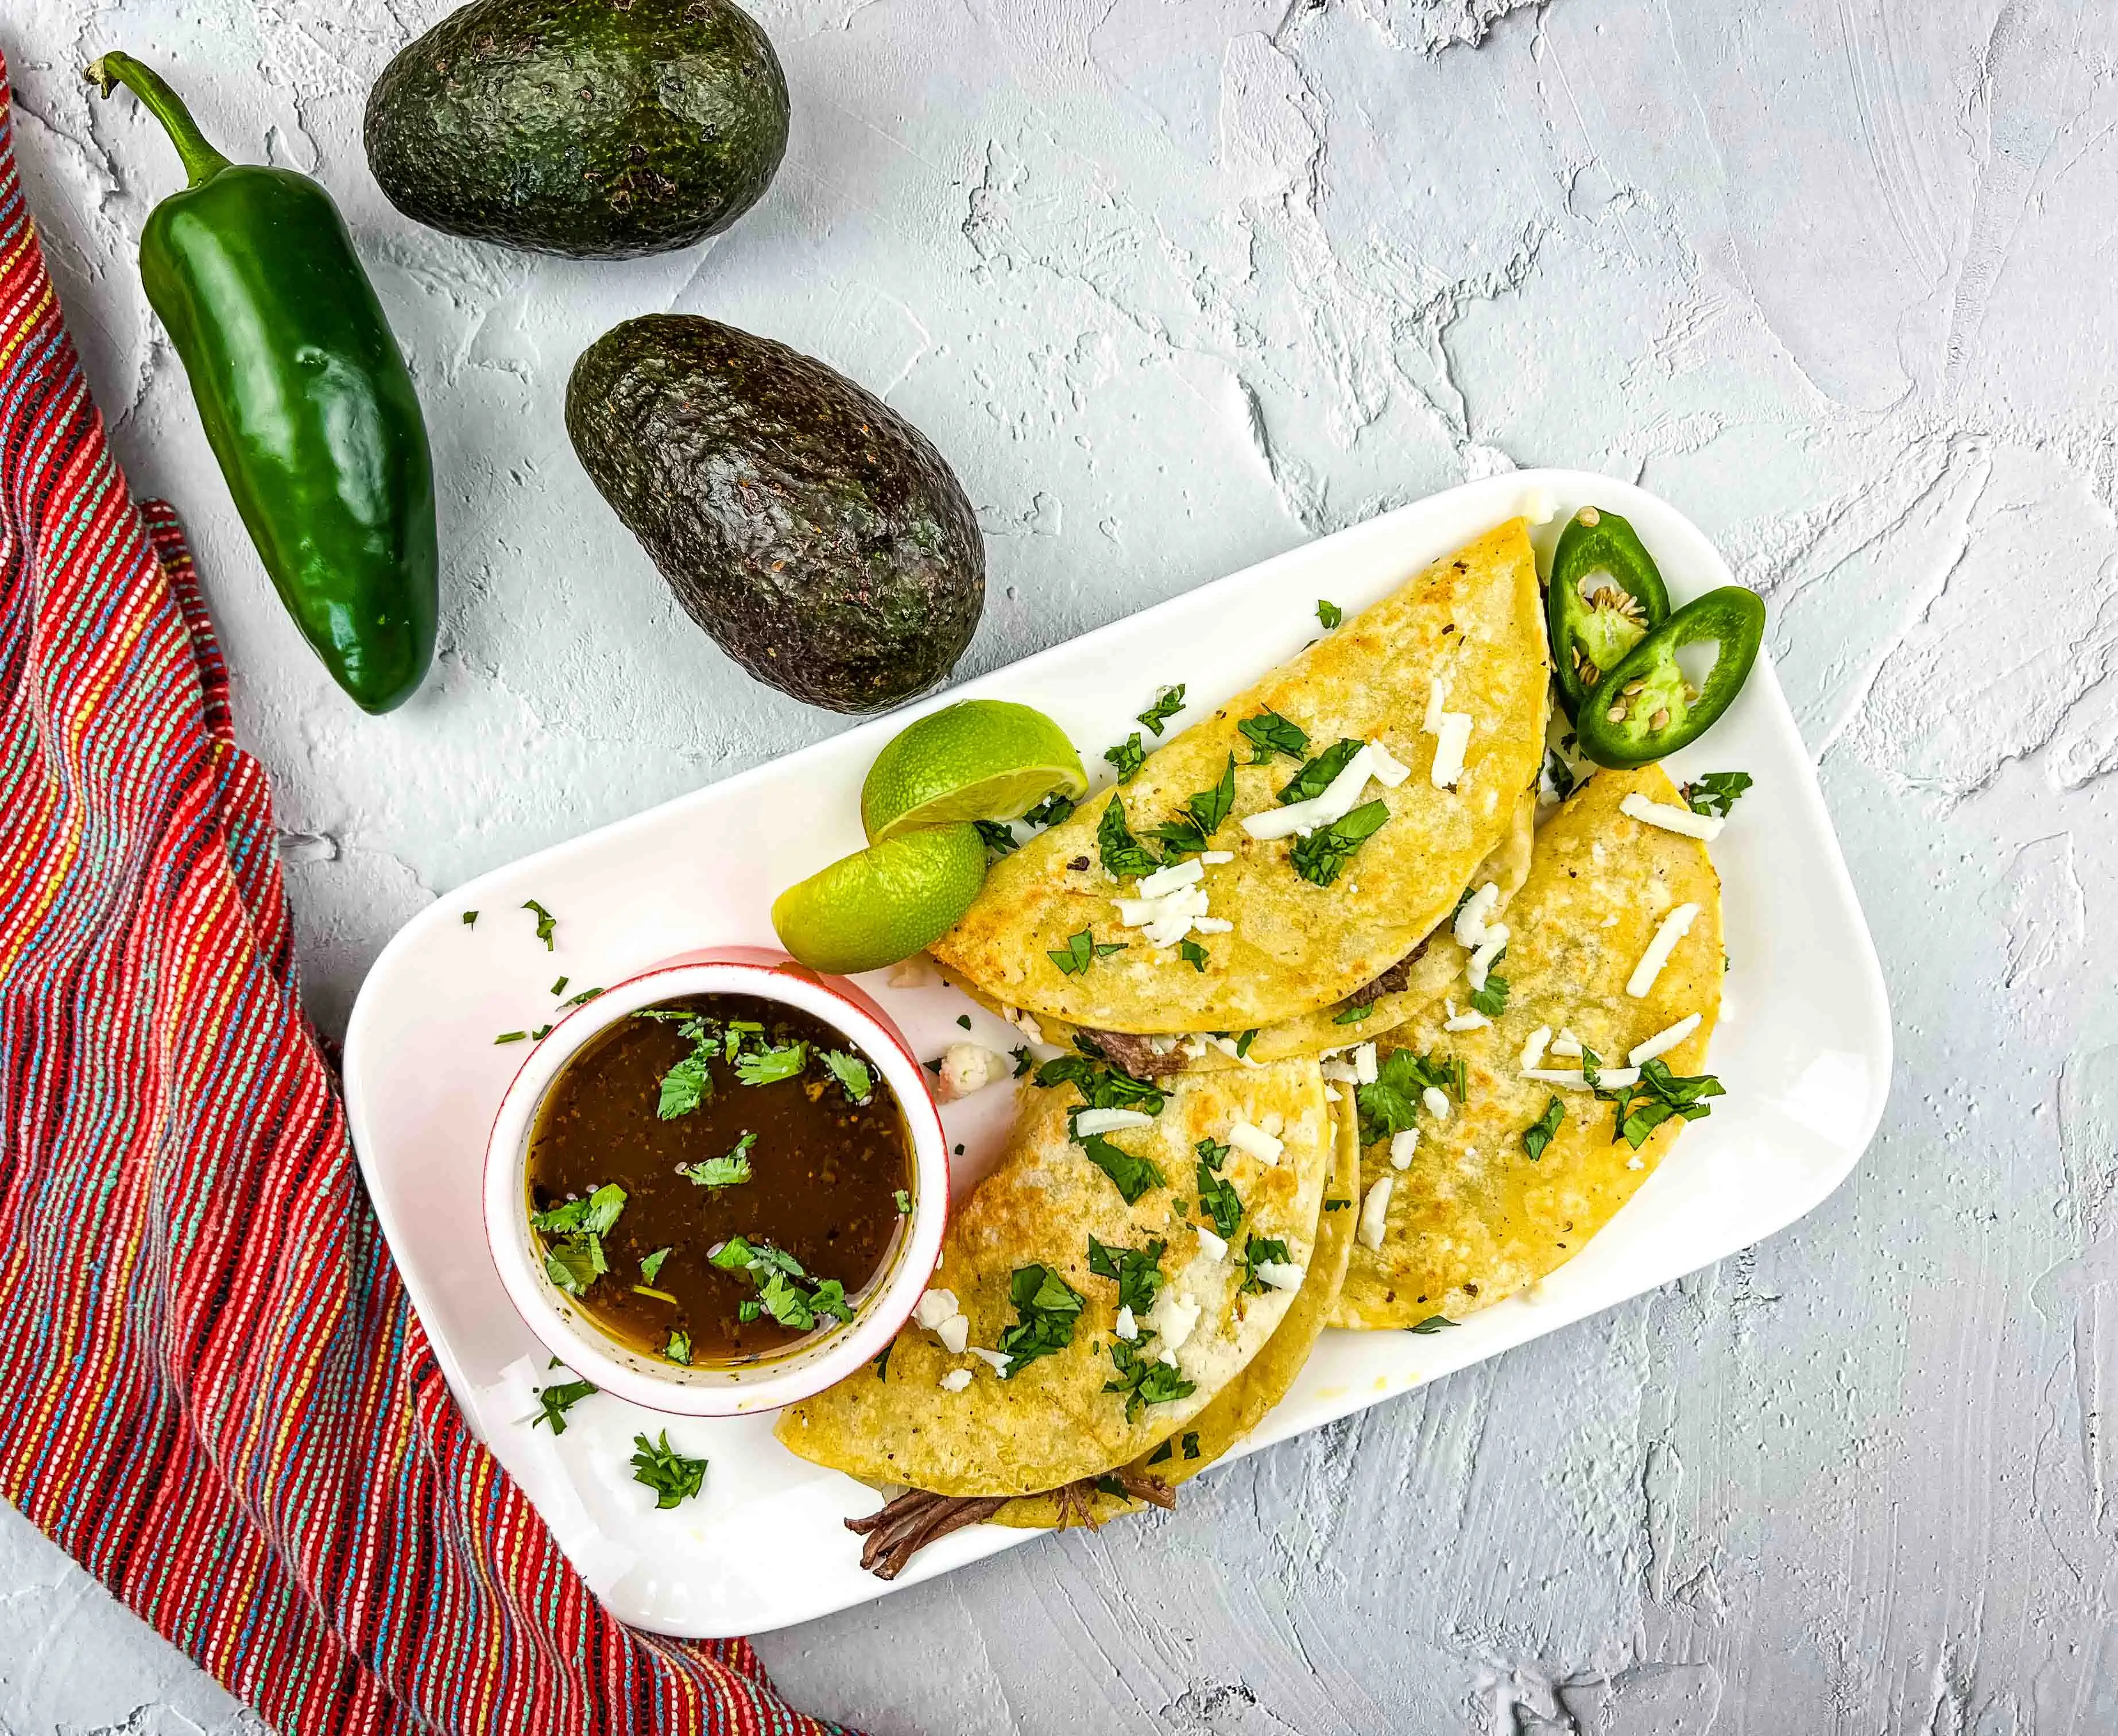 Serve and enjoy your birria tacos.